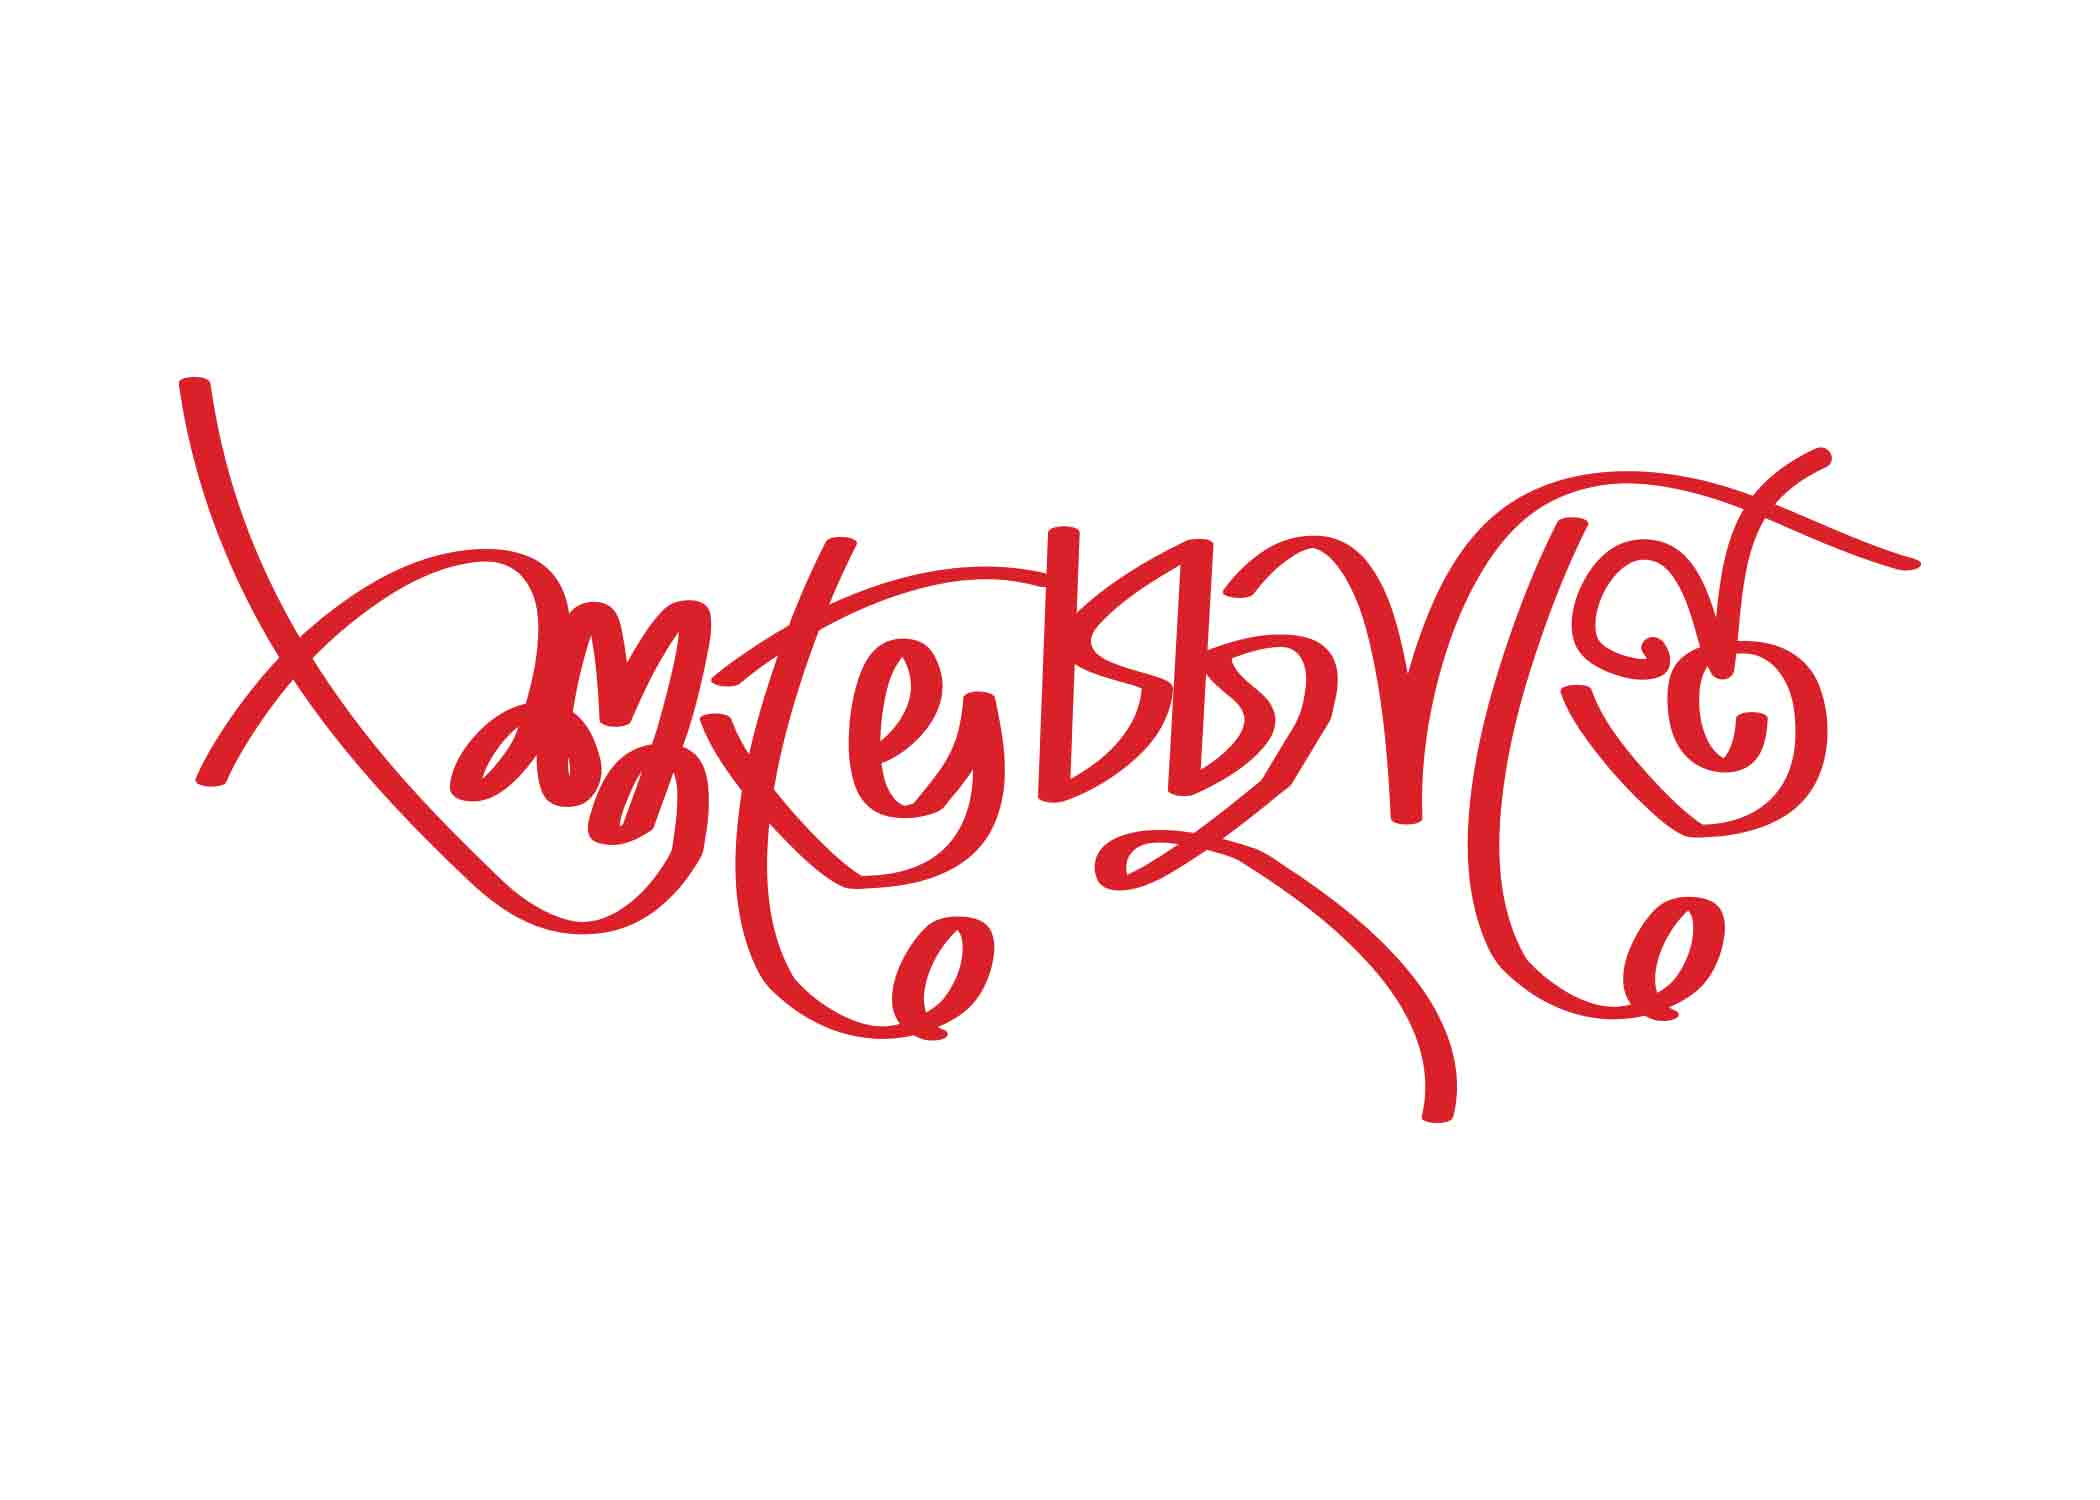 শুভেচ্ছান্তে  টাইপোগ্রাফি । Bangla Typhography PNG